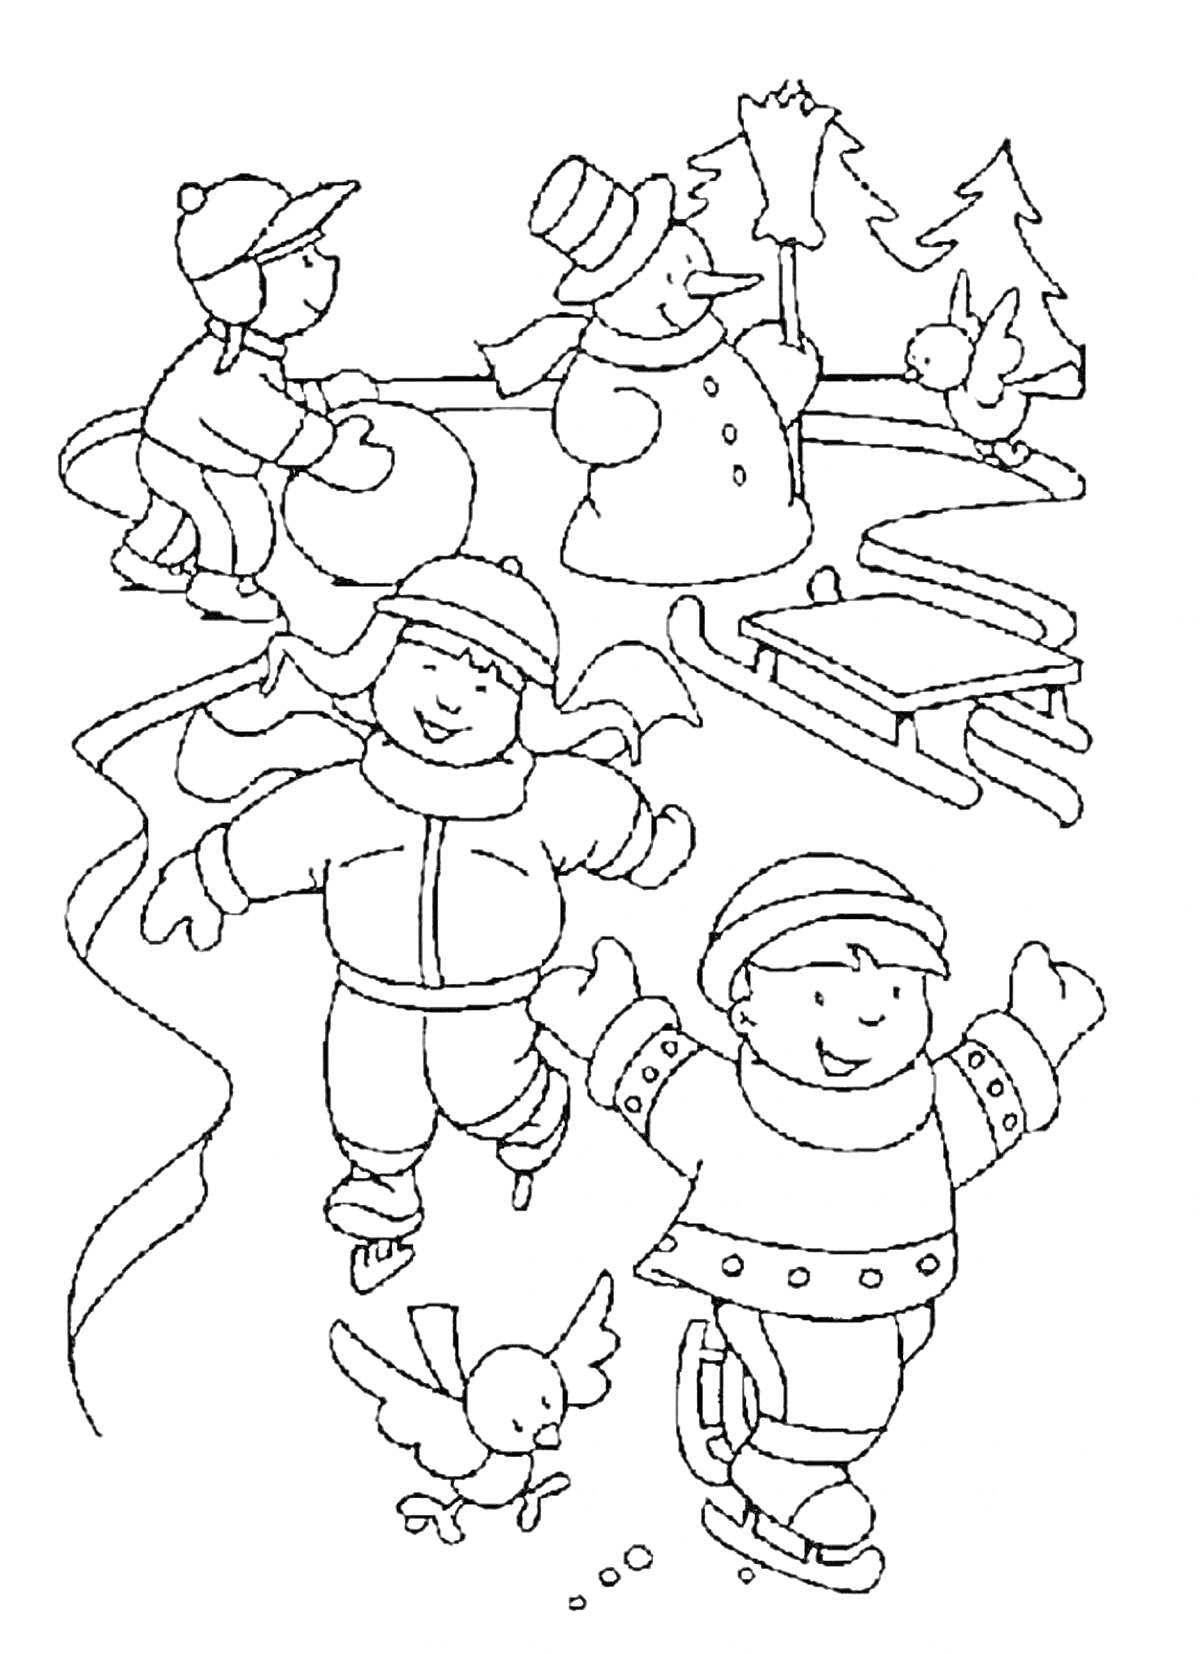 Раскраска Дети на катке с фигурным катанием, играют рядом со снеговиком, птица и сани на заднем плане, зимний лес